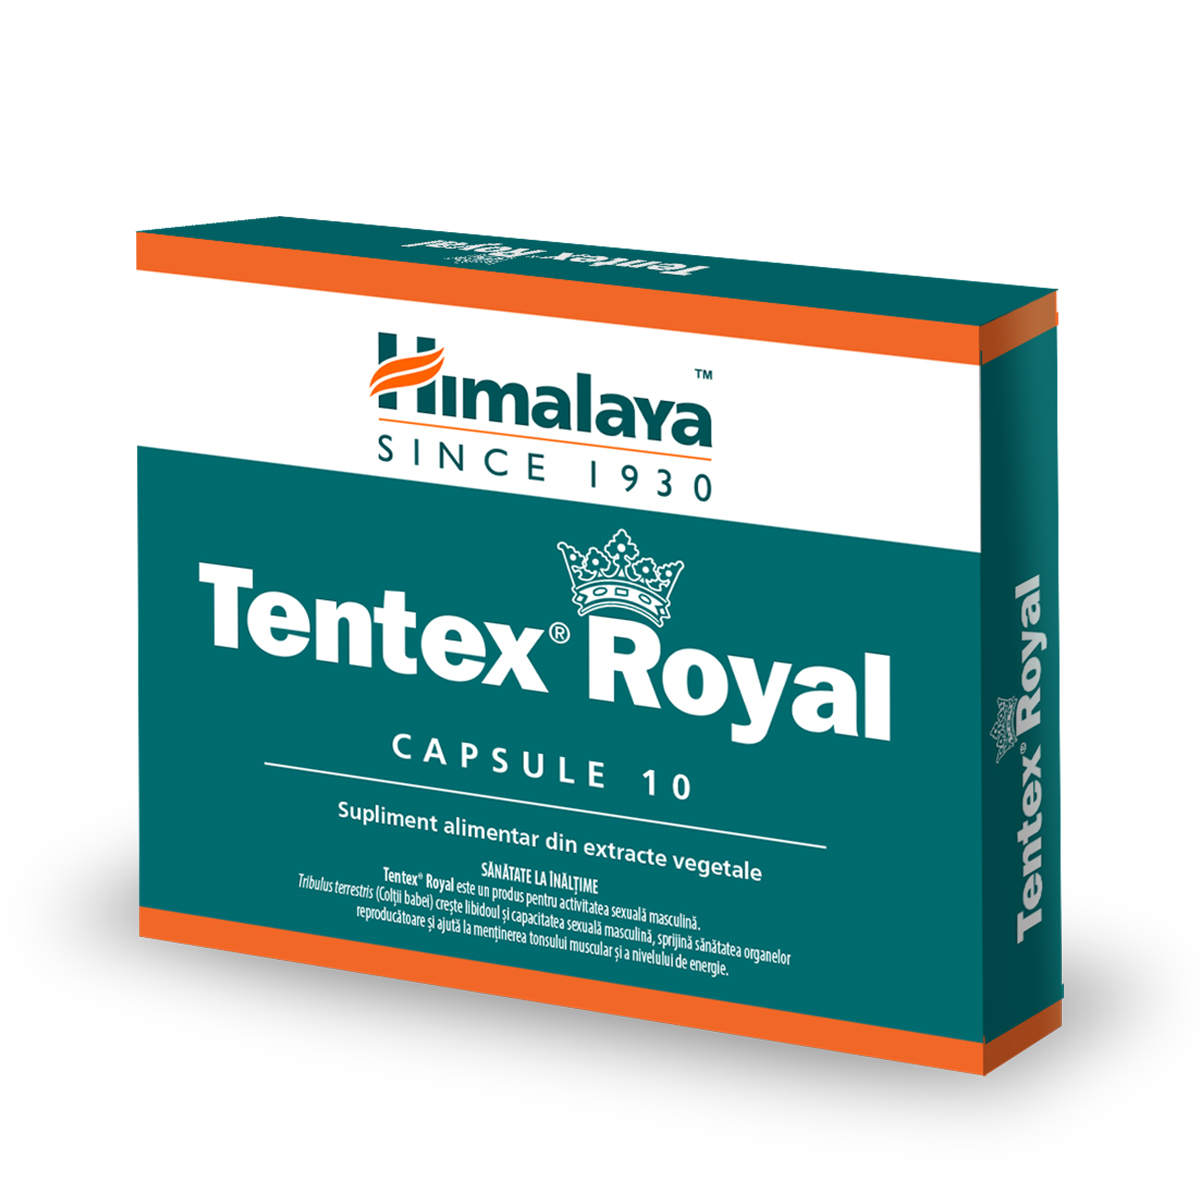 TONICE SEXUALE BARBATI - Tentex royal, 10 capsule, Himalya, sinapis.ro